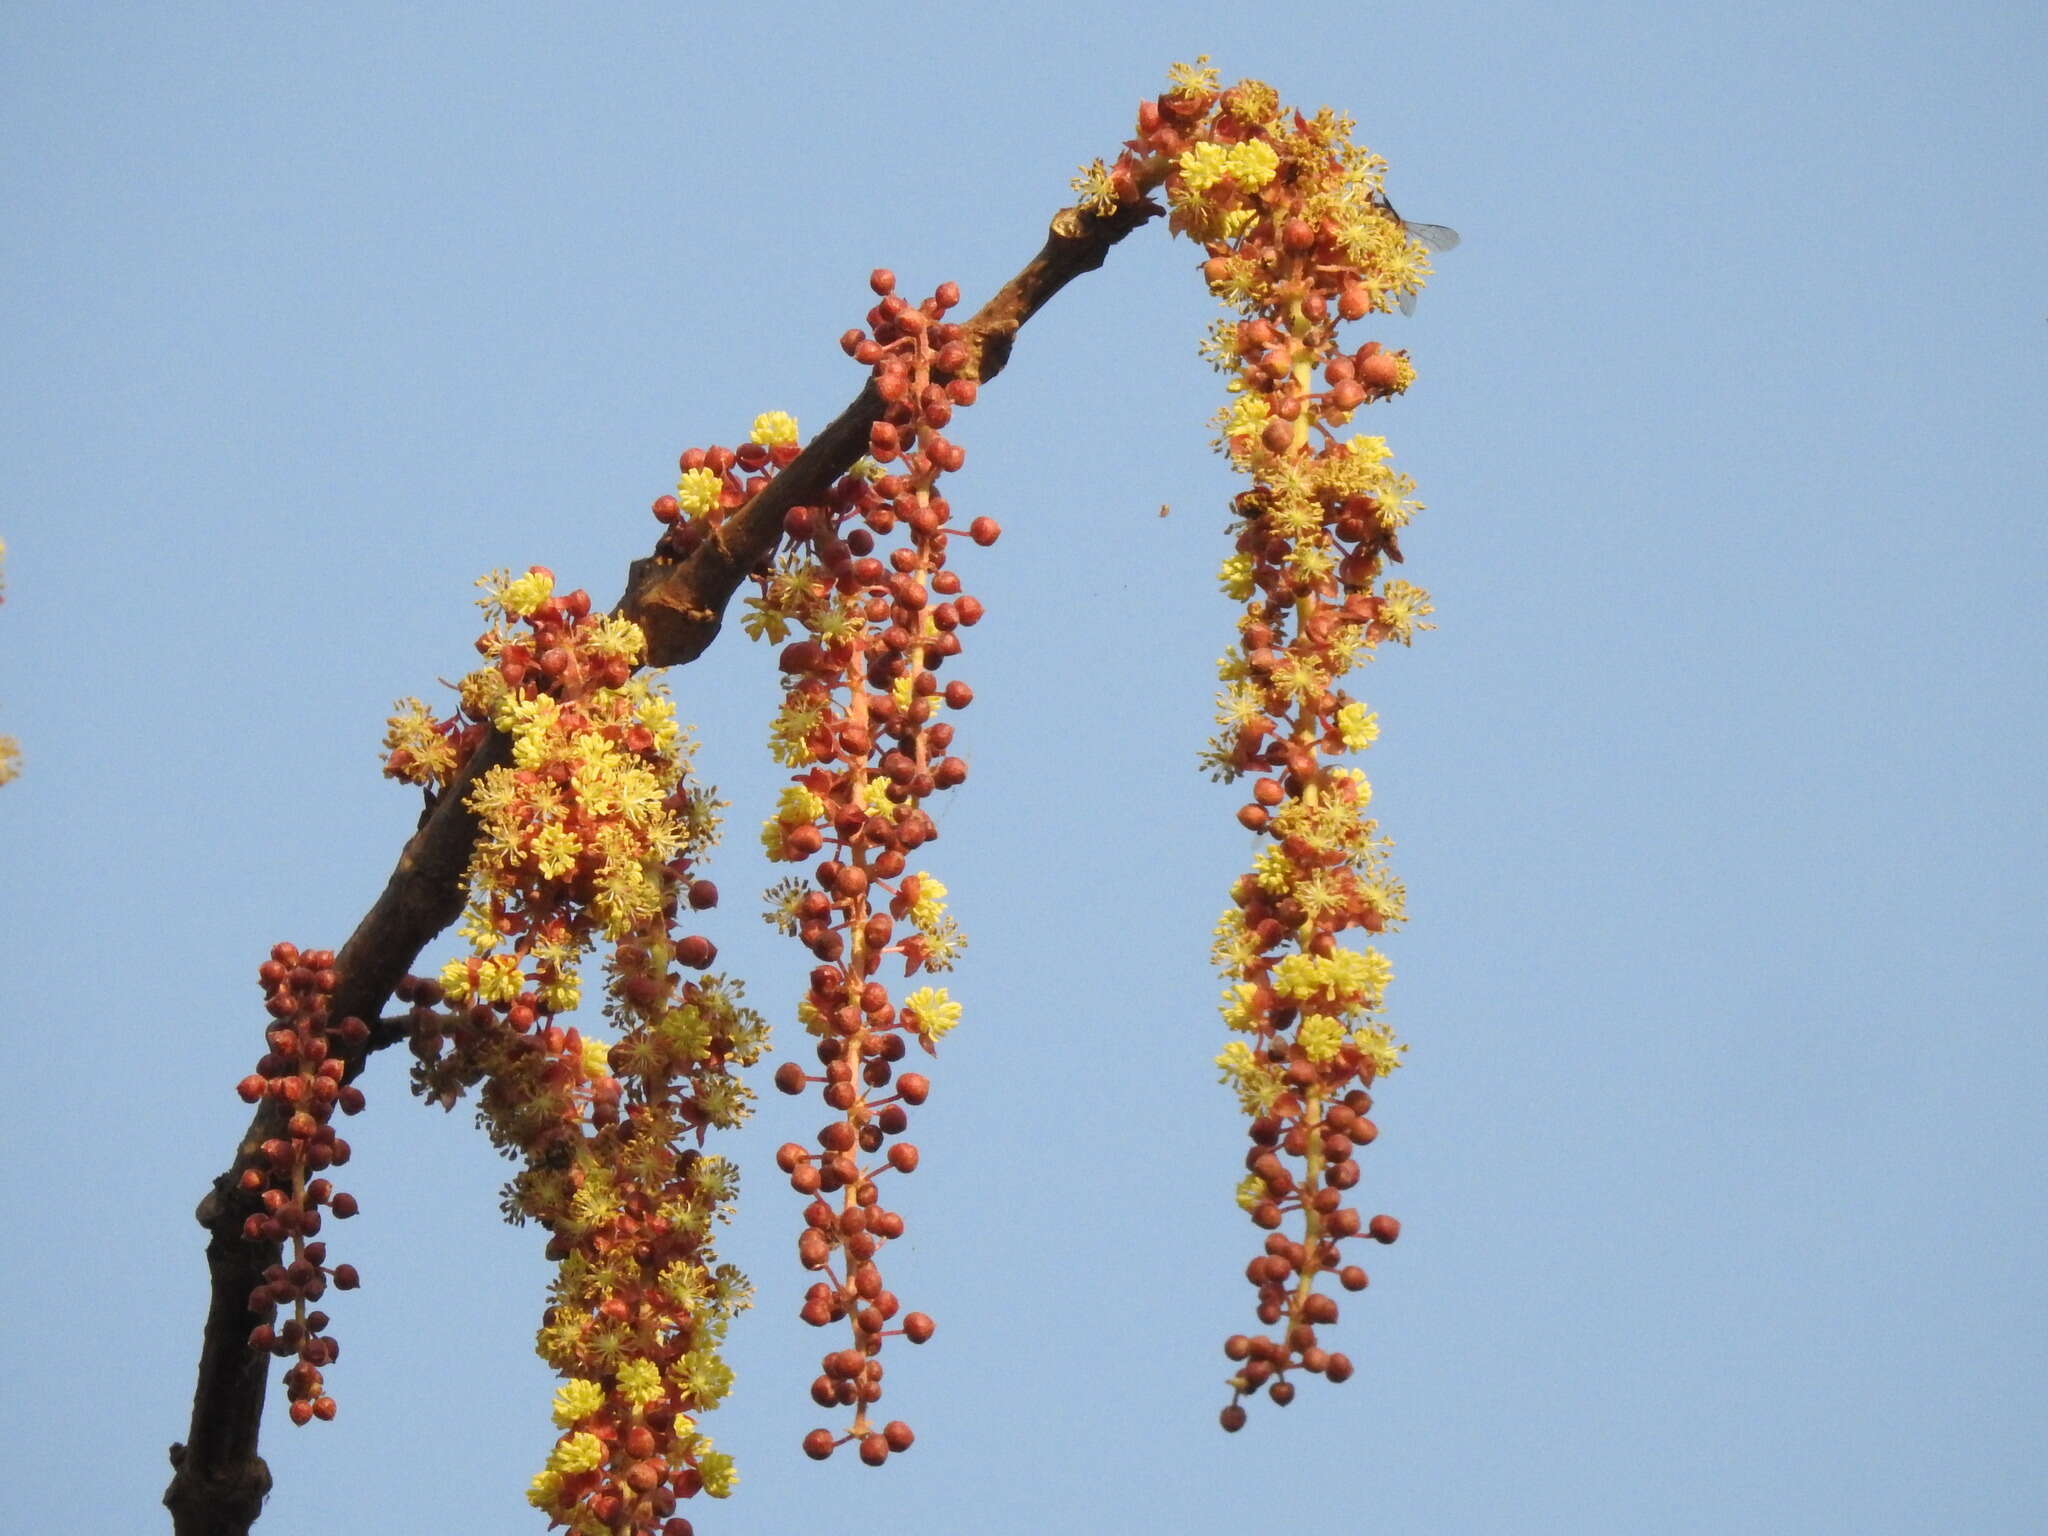 Sivun Mallotus polycarpus (Benth.) Kulju & Welzen kuva